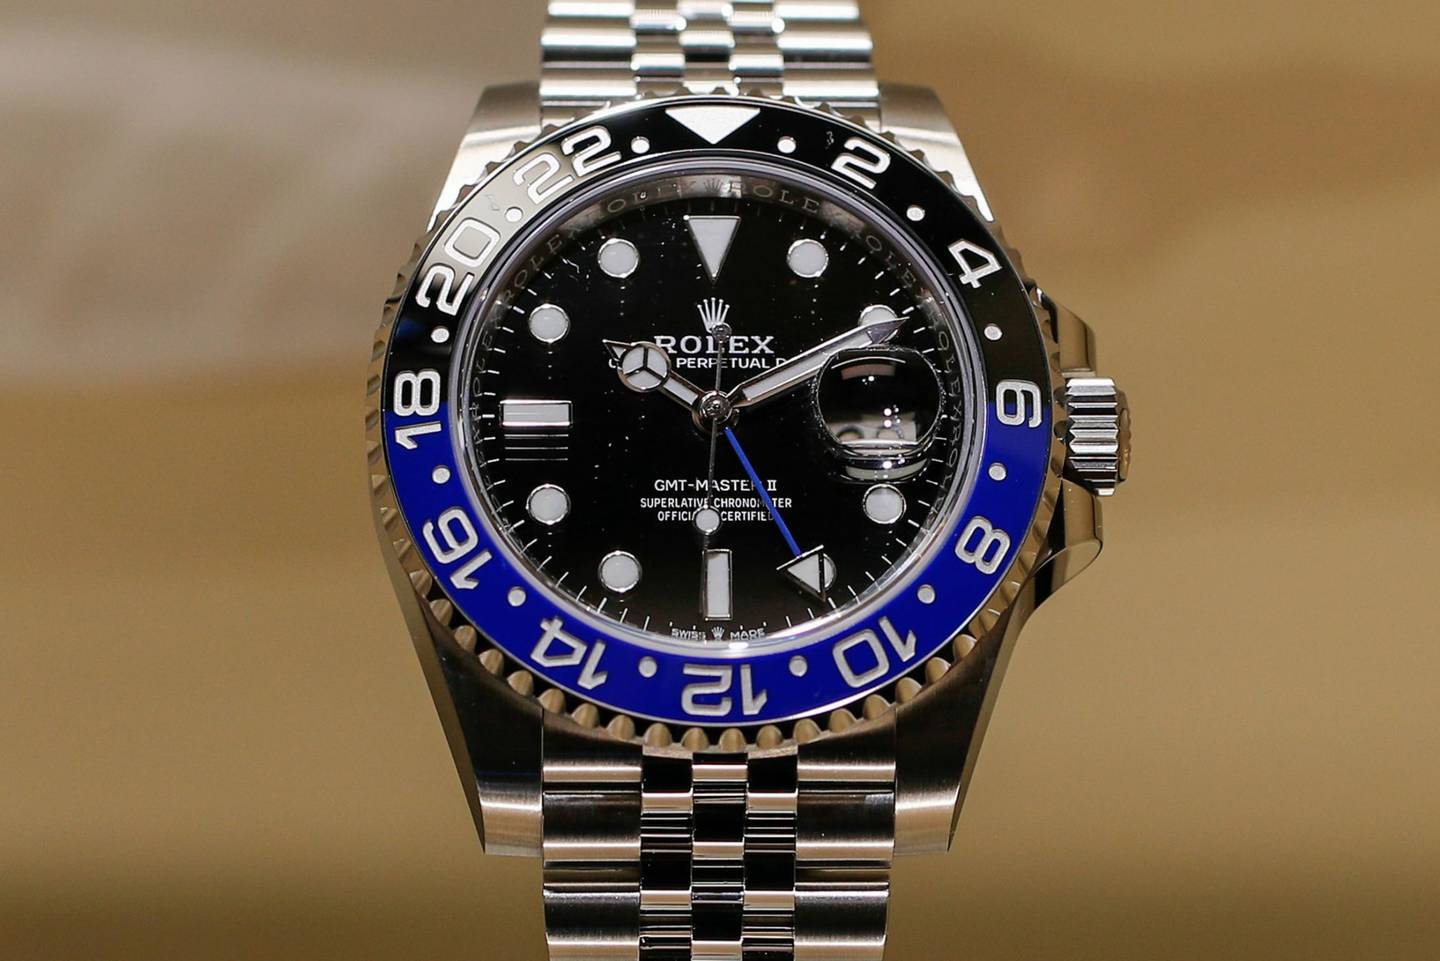 Un reloj de pulsera de lujo GMT-Master II, producido por Rolex SA, se exhibe durante el segundo día de la feria de relojes y joyas de lujo Baselworld 2019 en Basilea, Suiza, el jueves 21 de marzo de 2019.